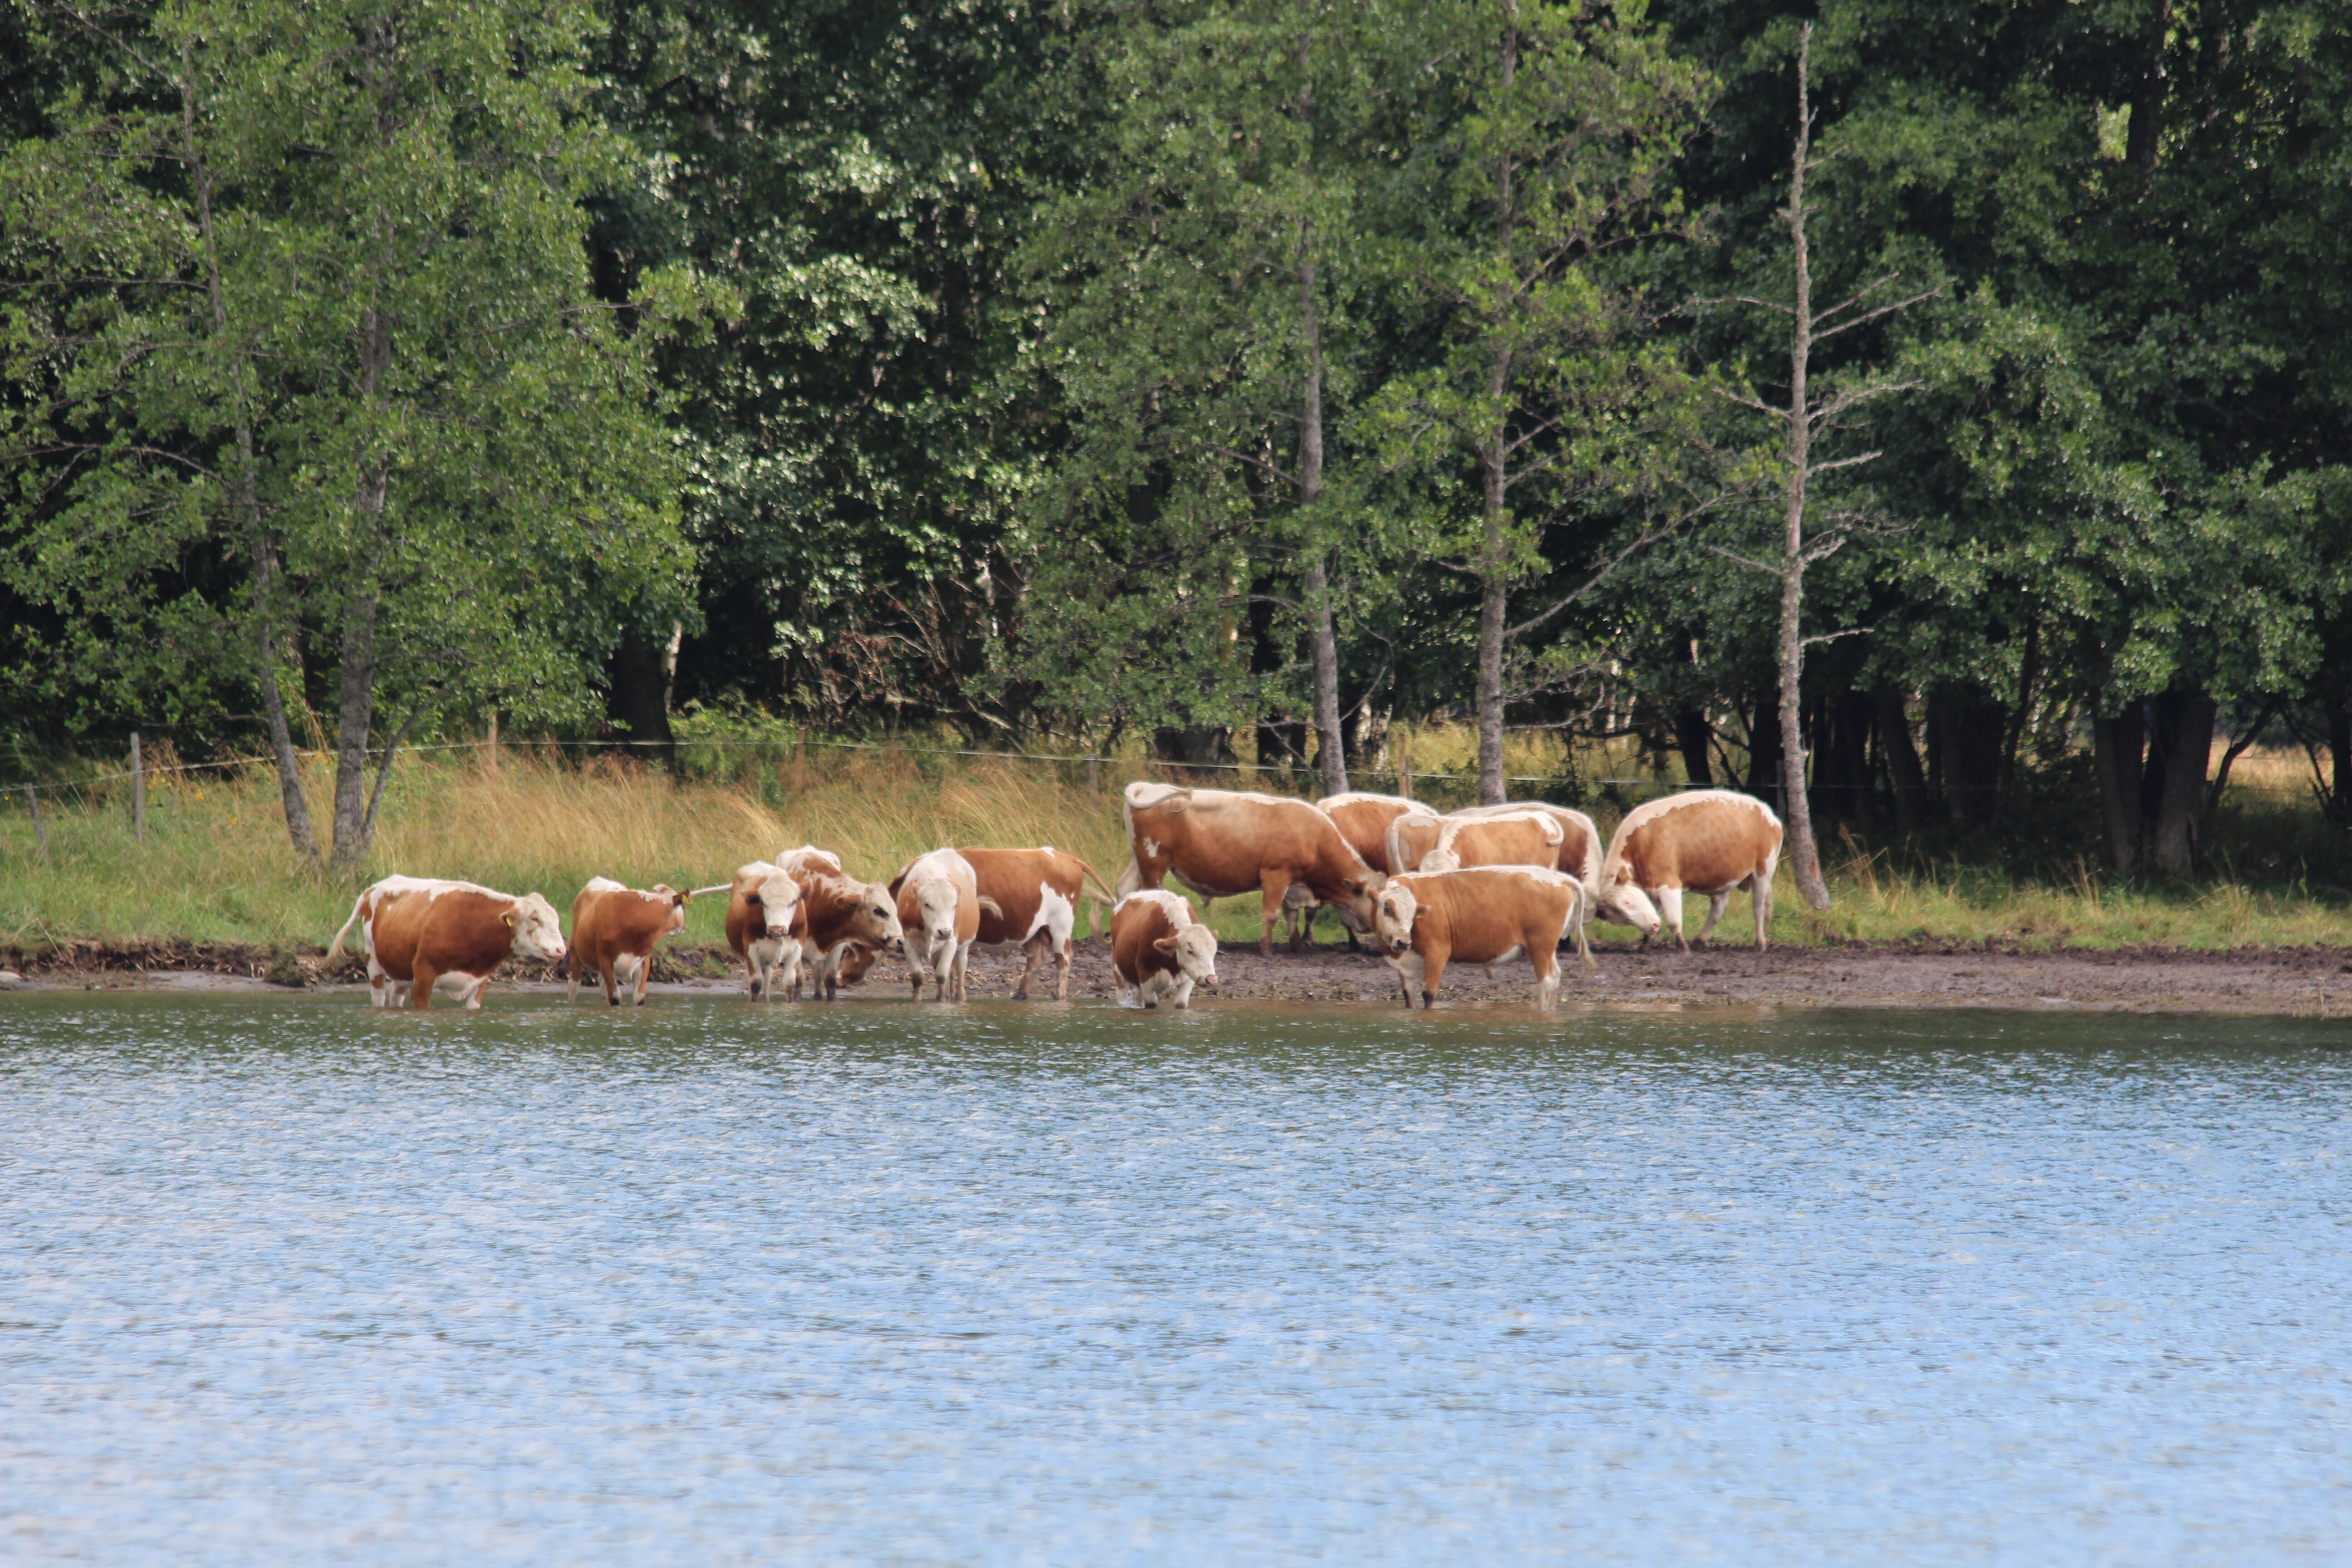 Matkalla lehmät olivat laiduntamassa rannalla.